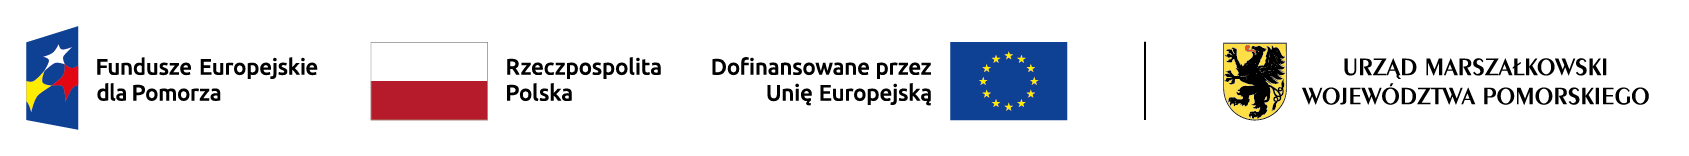 Listwa górna logotypów zawierająca logotypy: Fundusze Europejskie dla Pomorza, Rzeczpospolita Polska, Dofinansowane przez Unię Europejską oraz Urząd Marszałkowski Województwa Pomorskiego